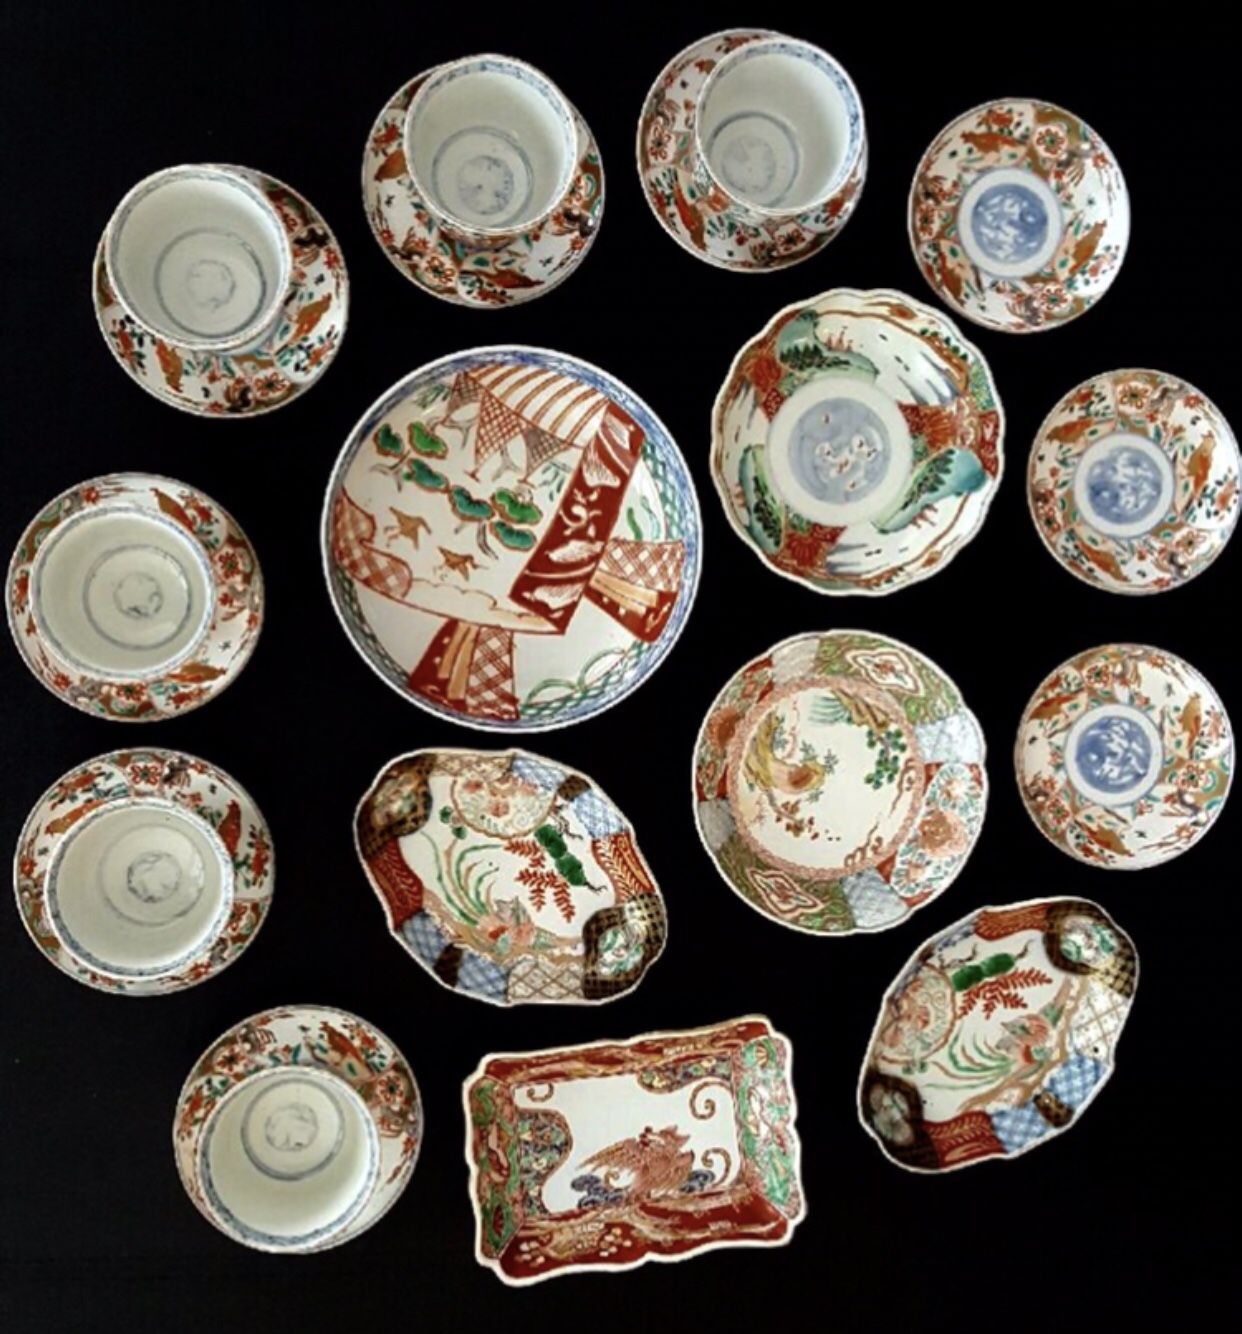 21 Ancient Imari Porcelain Teacup Sets, Plates, etc